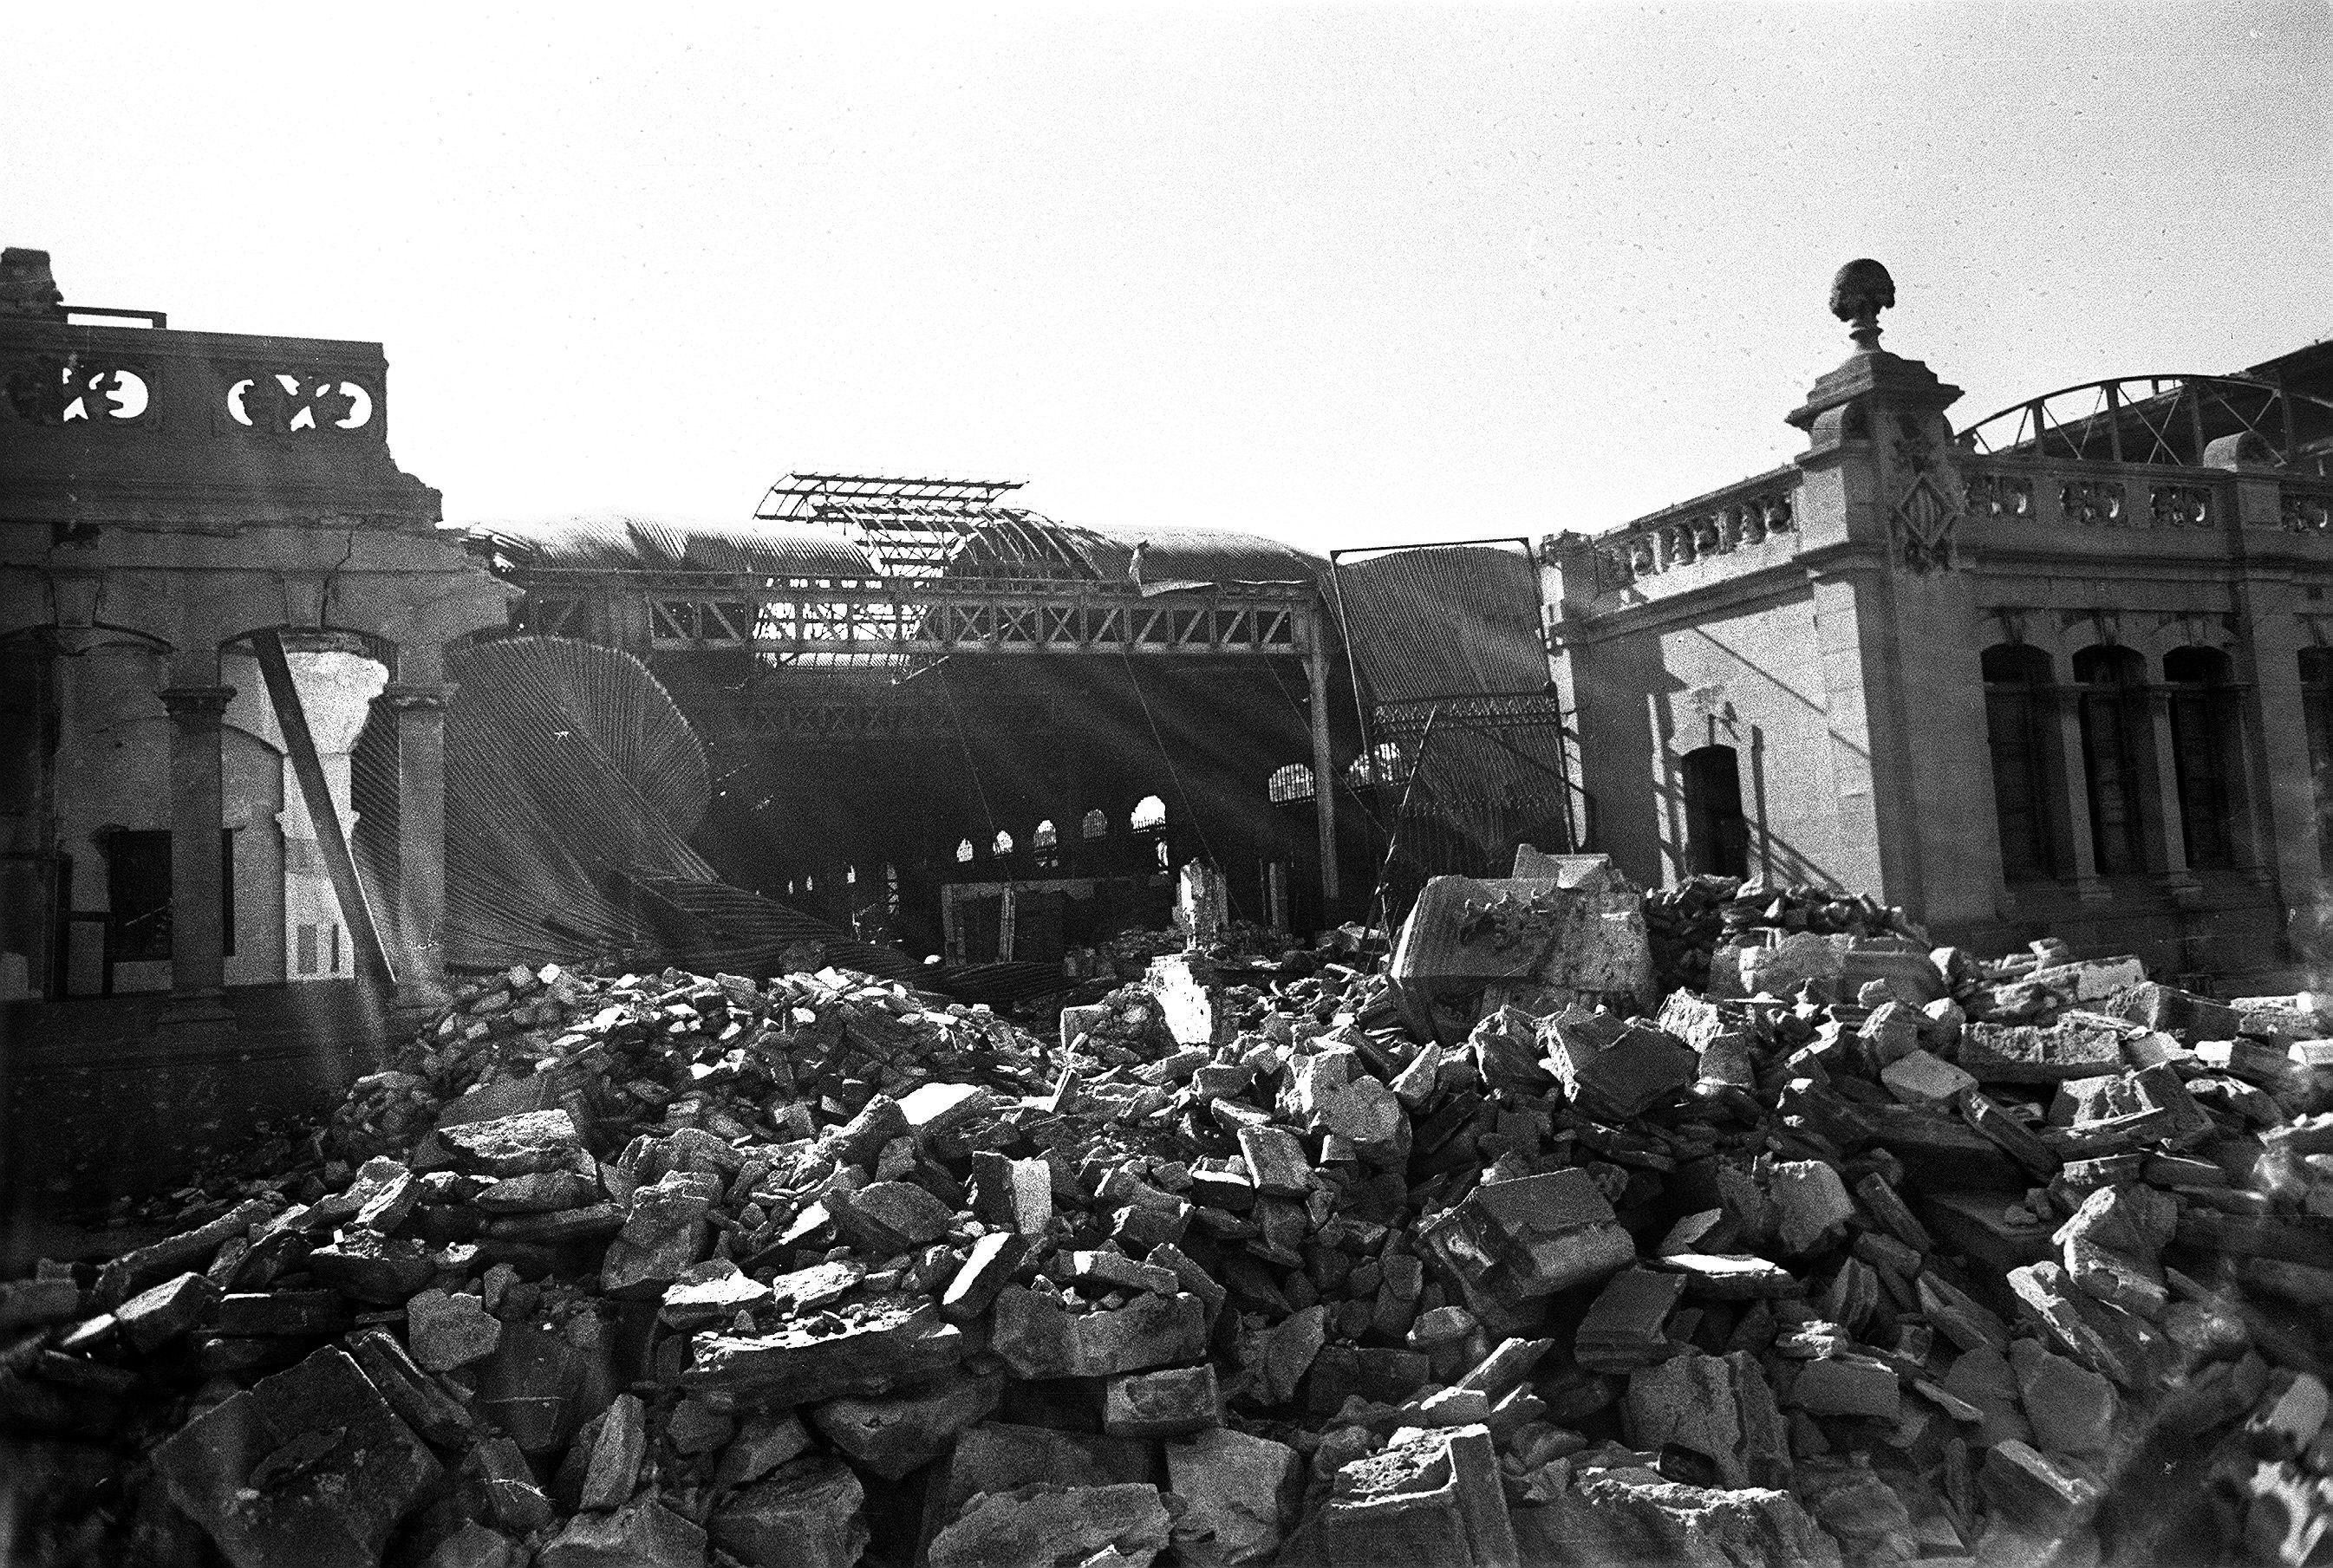 Un dels tinglados del port de Barcelona, que probablement contenia material de guerra, devastat per una bomba. / EFE